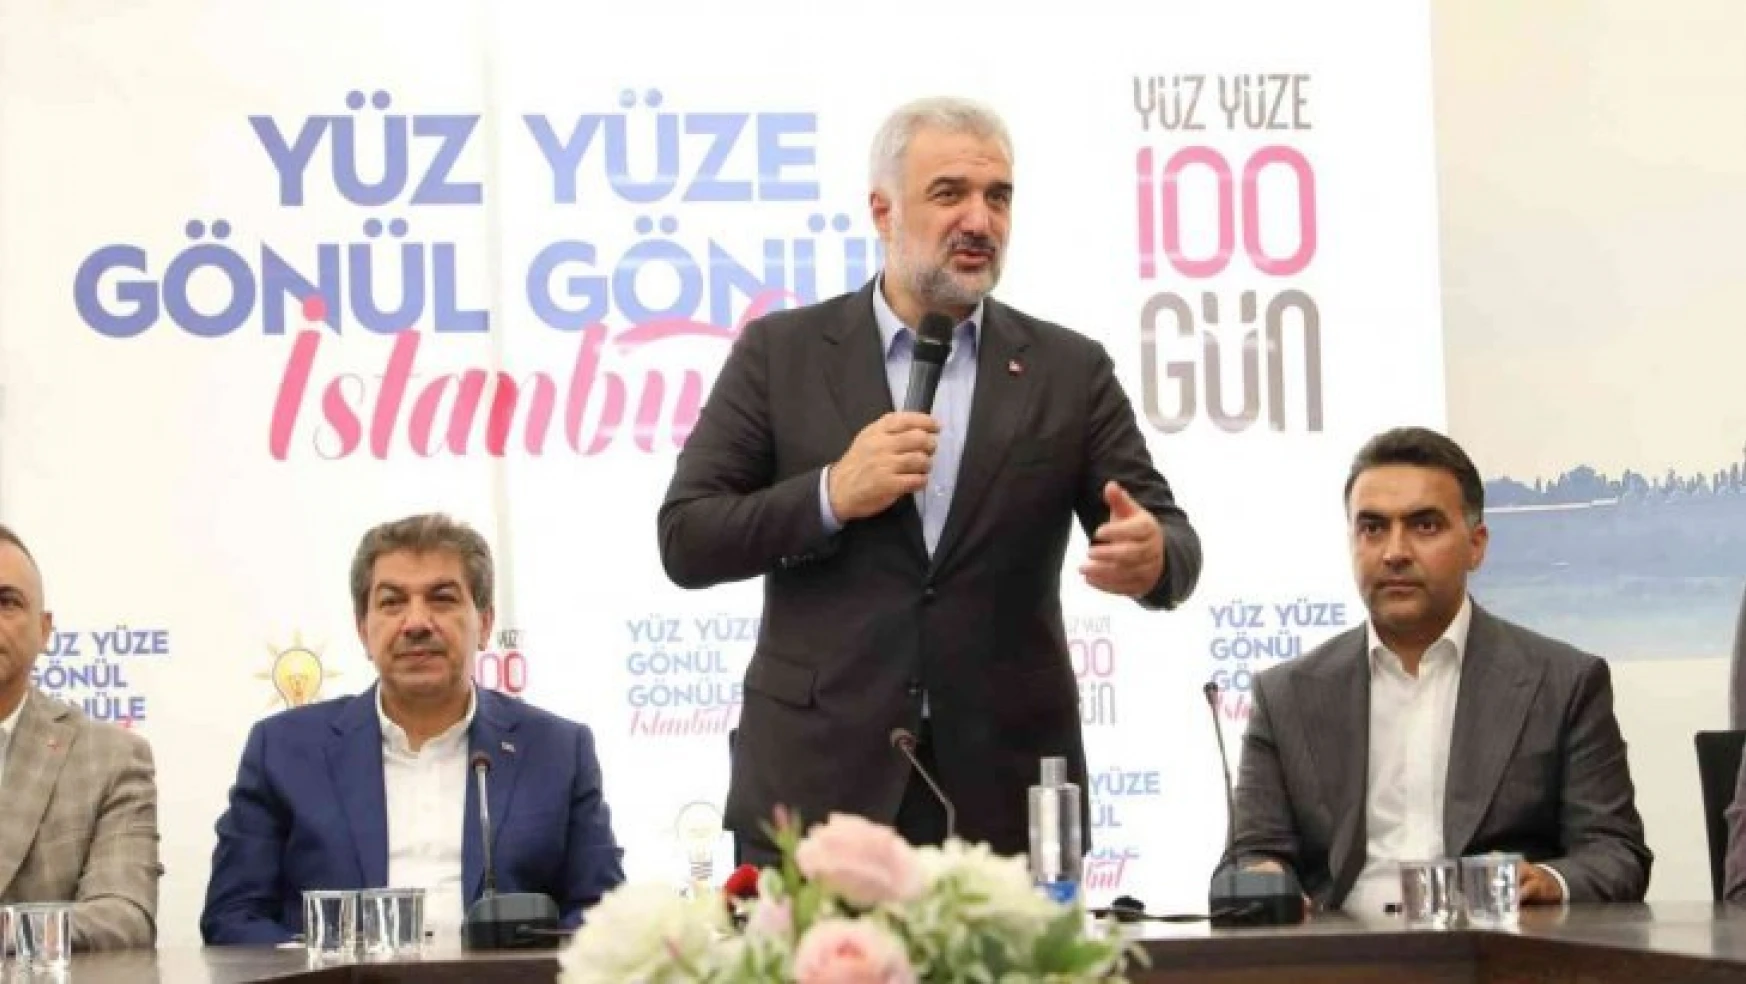 AK Parti 'Yüz Yüze 100 Gün' programı ile İstanbul'da sahaya indi